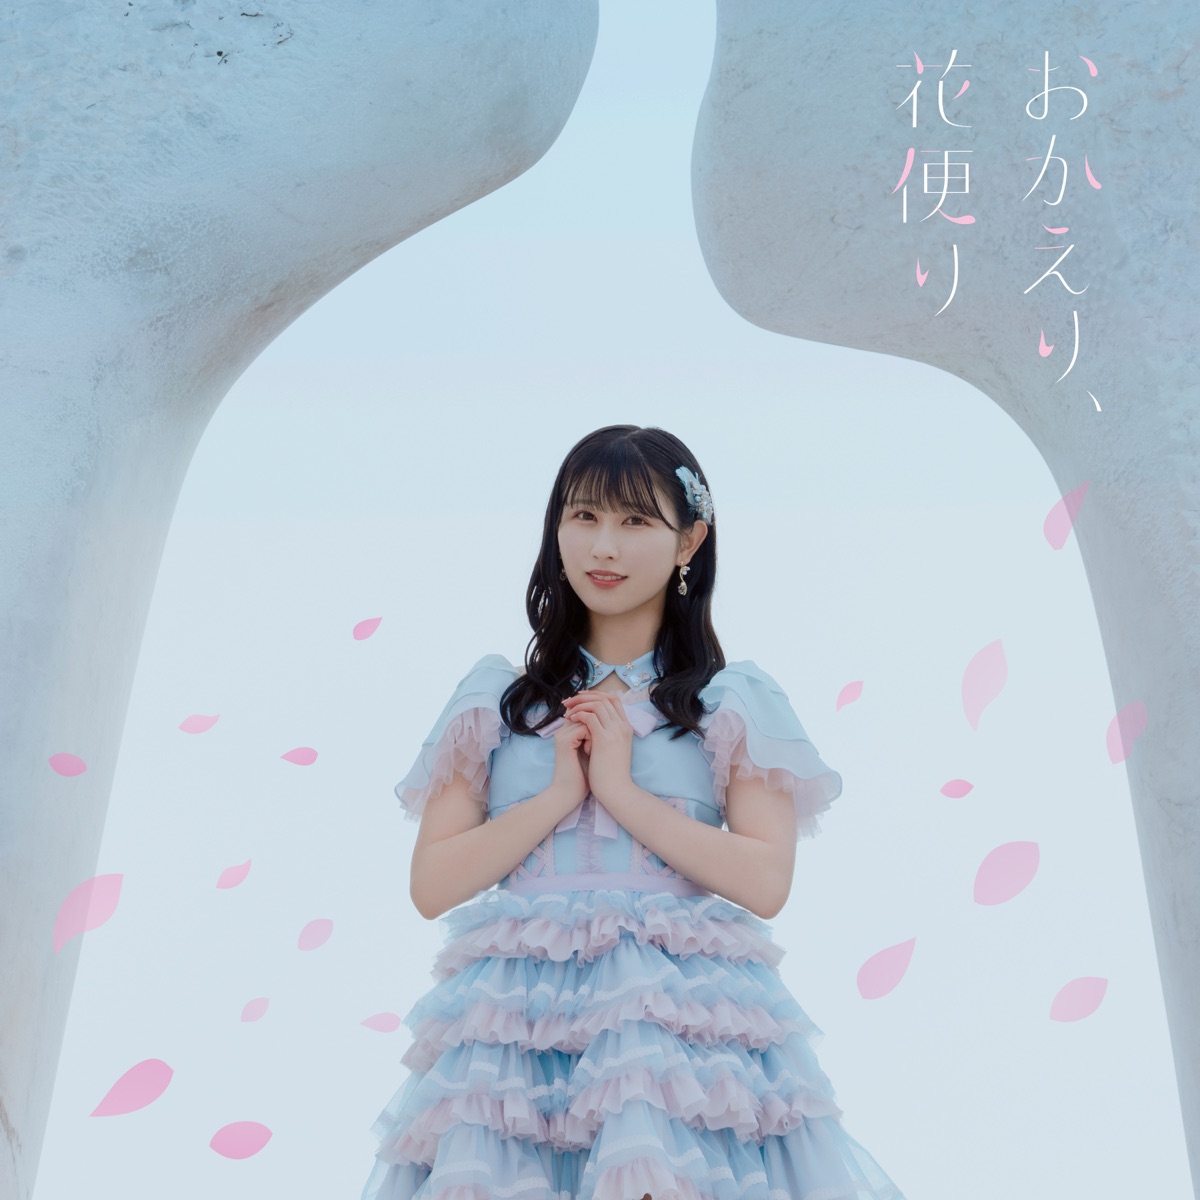 Cover art for『=LOVE - Okaeri Hanadayori』from the release『Okaeri Hanadayori』